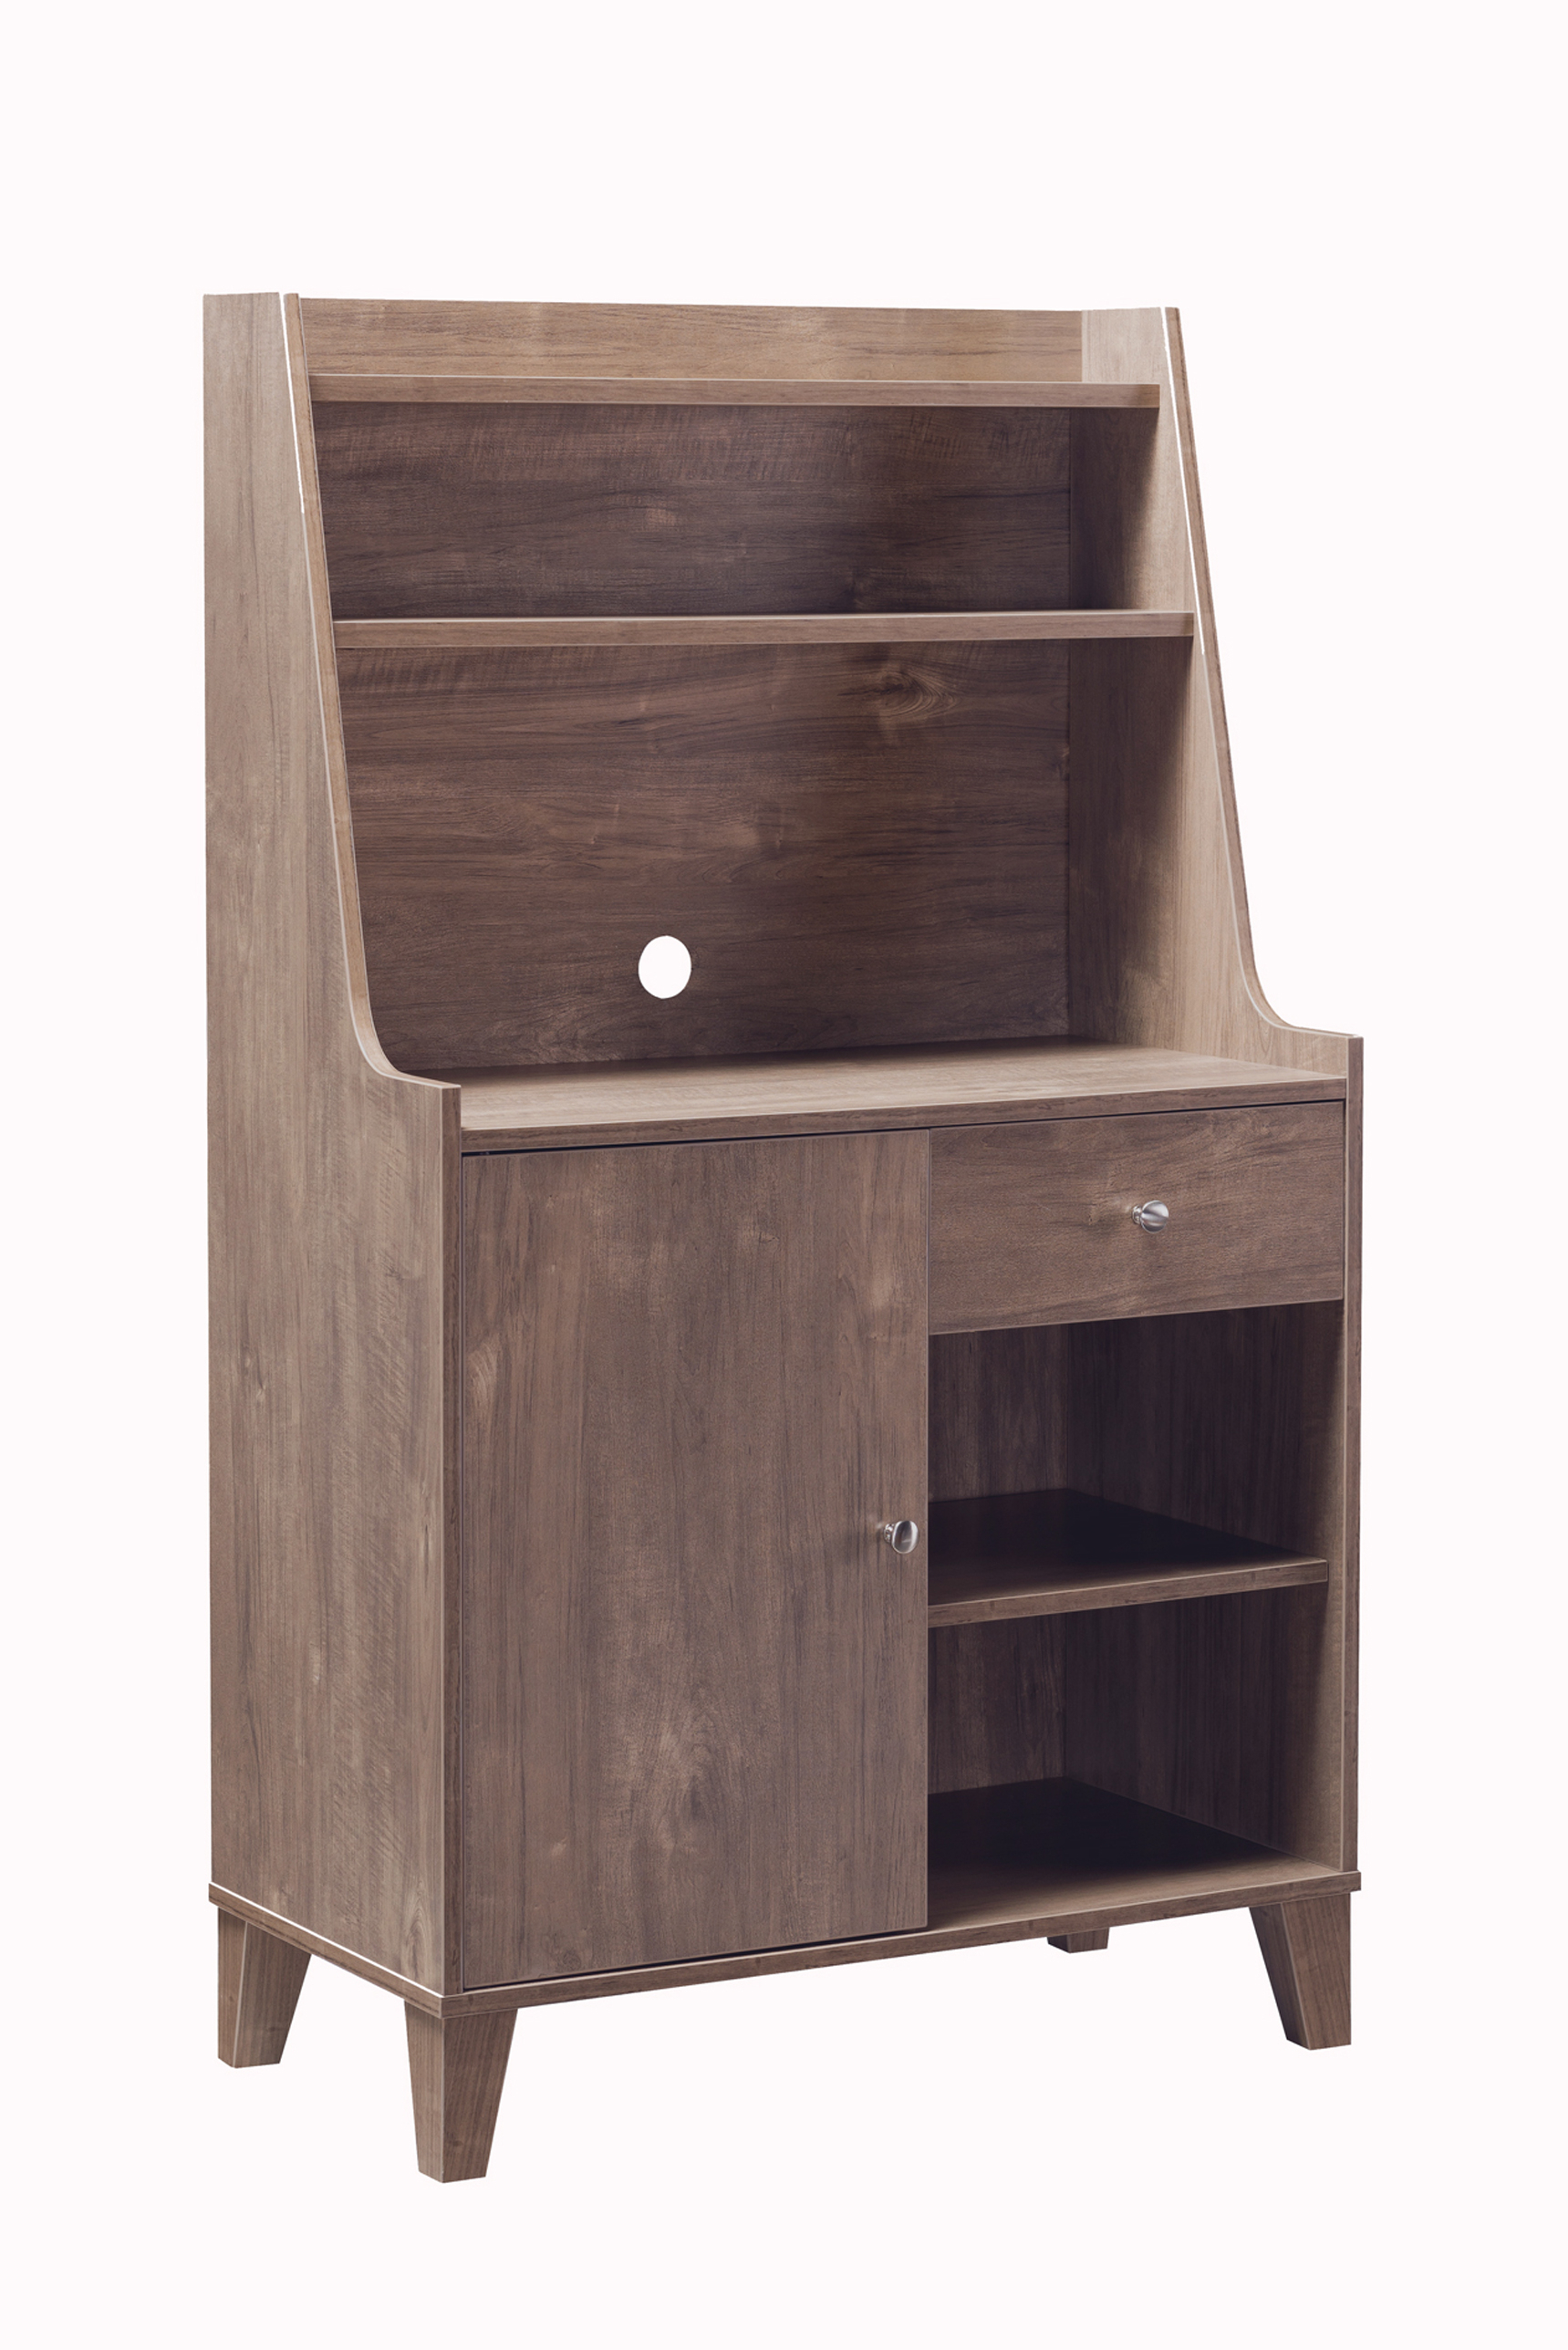 Saltoro Sherpi Wooden 1 Door Bakers Cabinet with 2 Top Shelves and 1 Drawer, Brown